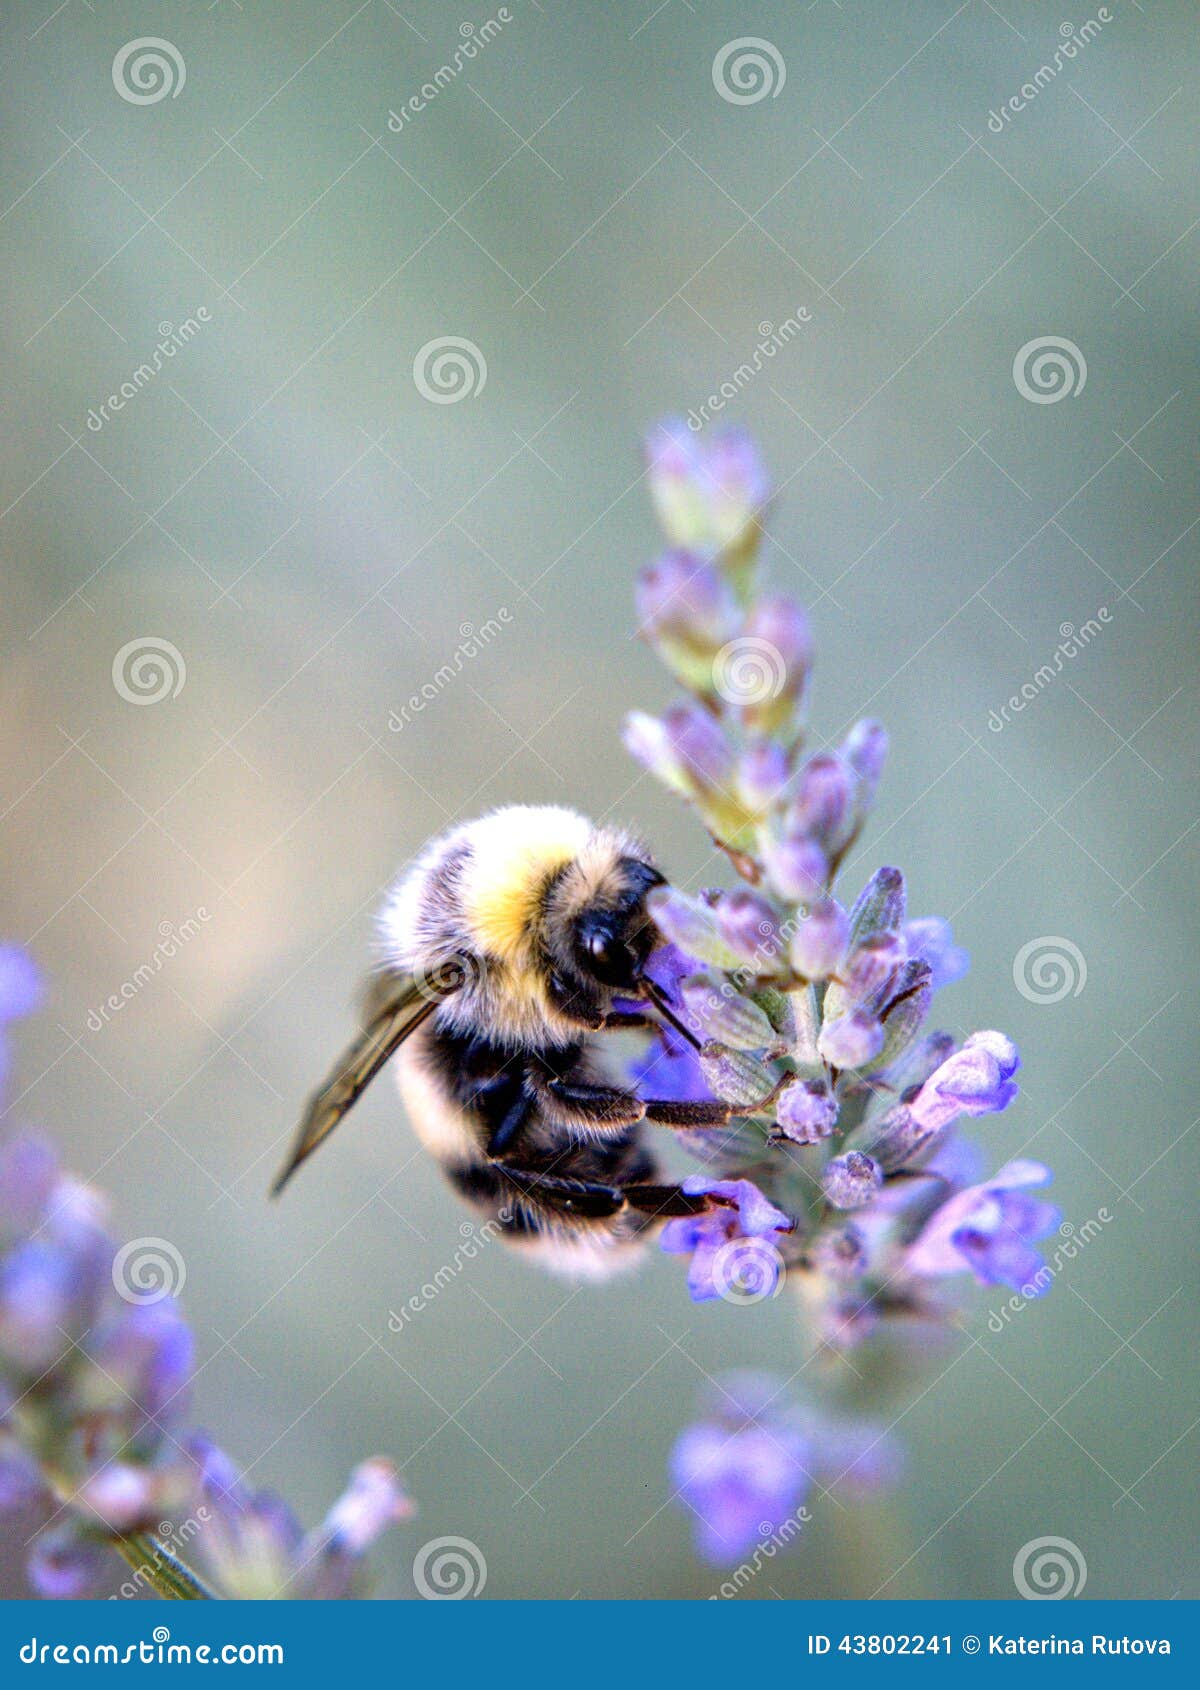 土蜂坐一朵紫色花，细节，灰色蓝色backgound